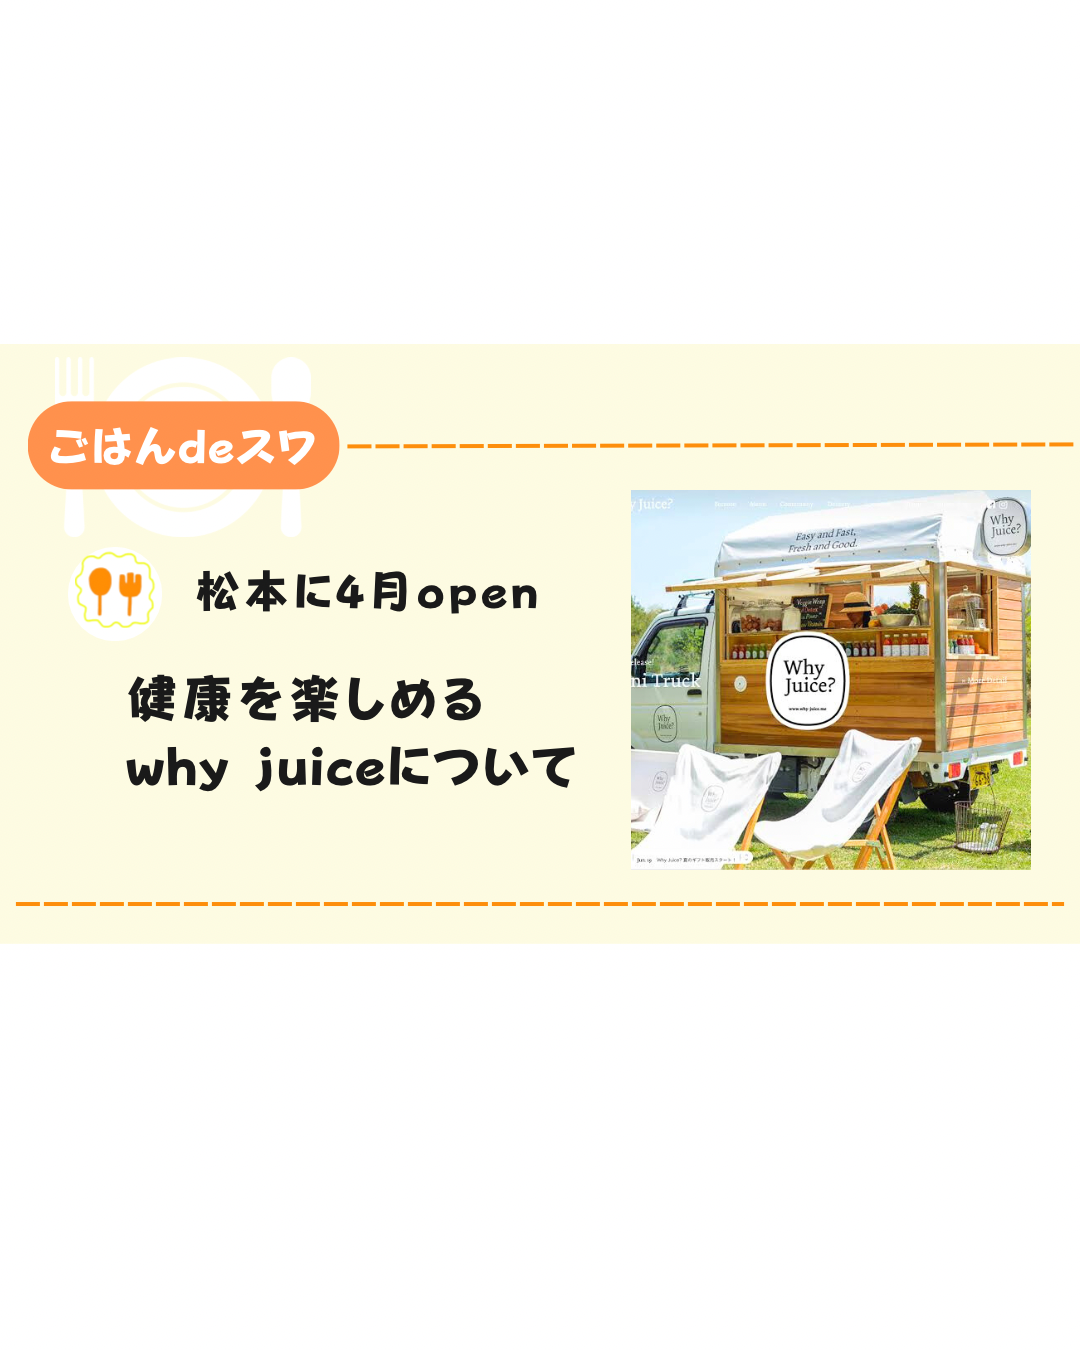 【4月オープン】why juice?のジュースに見られる様々な特徴をまとめてみた！